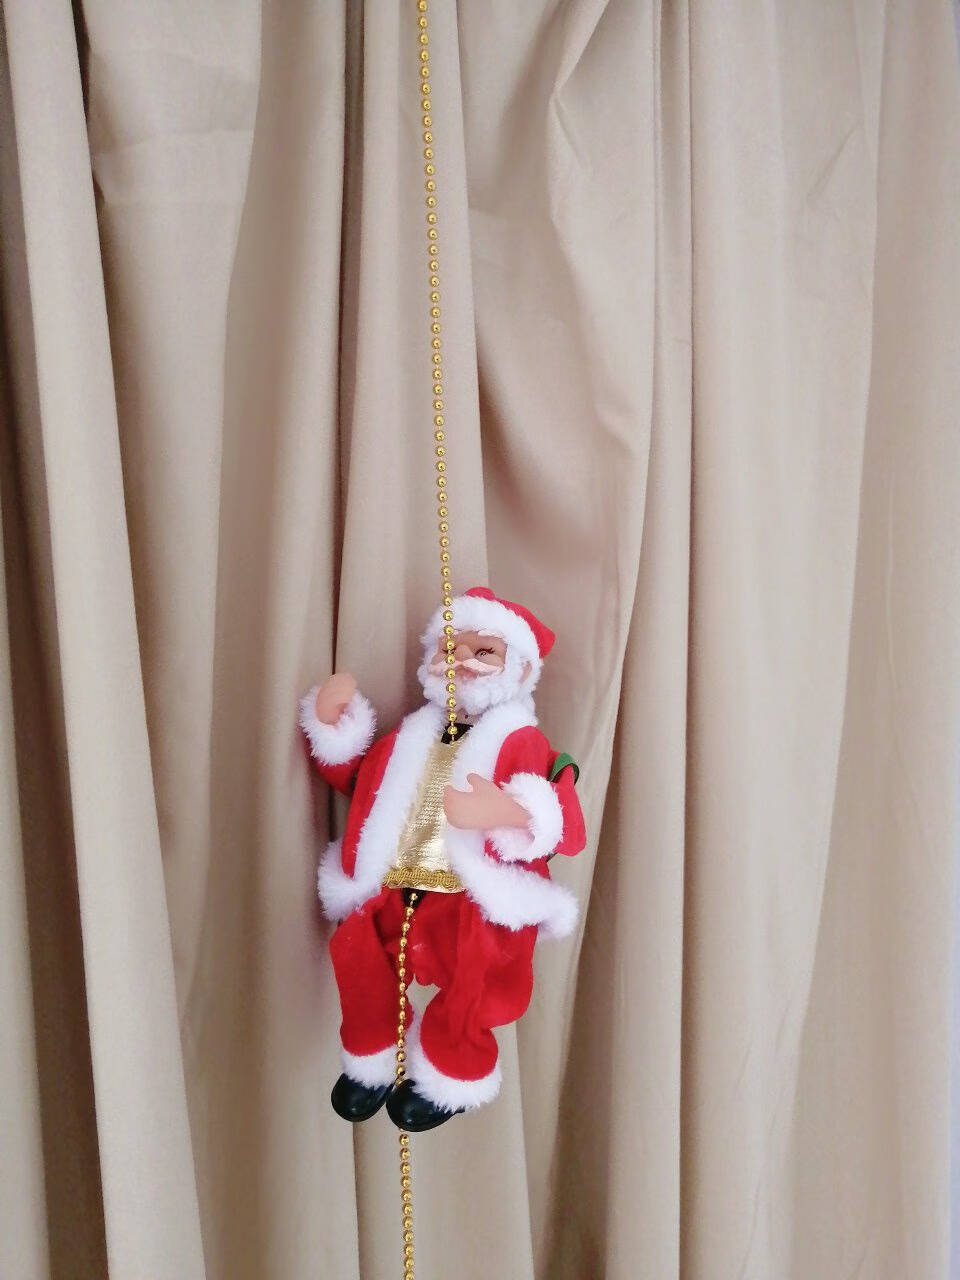 电动圣诞老人爬绳爬梯子爬珠玩具网红圣诞节礼物送儿童圣诞布置商超装灯饰装饰品会爬绳的圣诞老人礼品地推圣诞老人